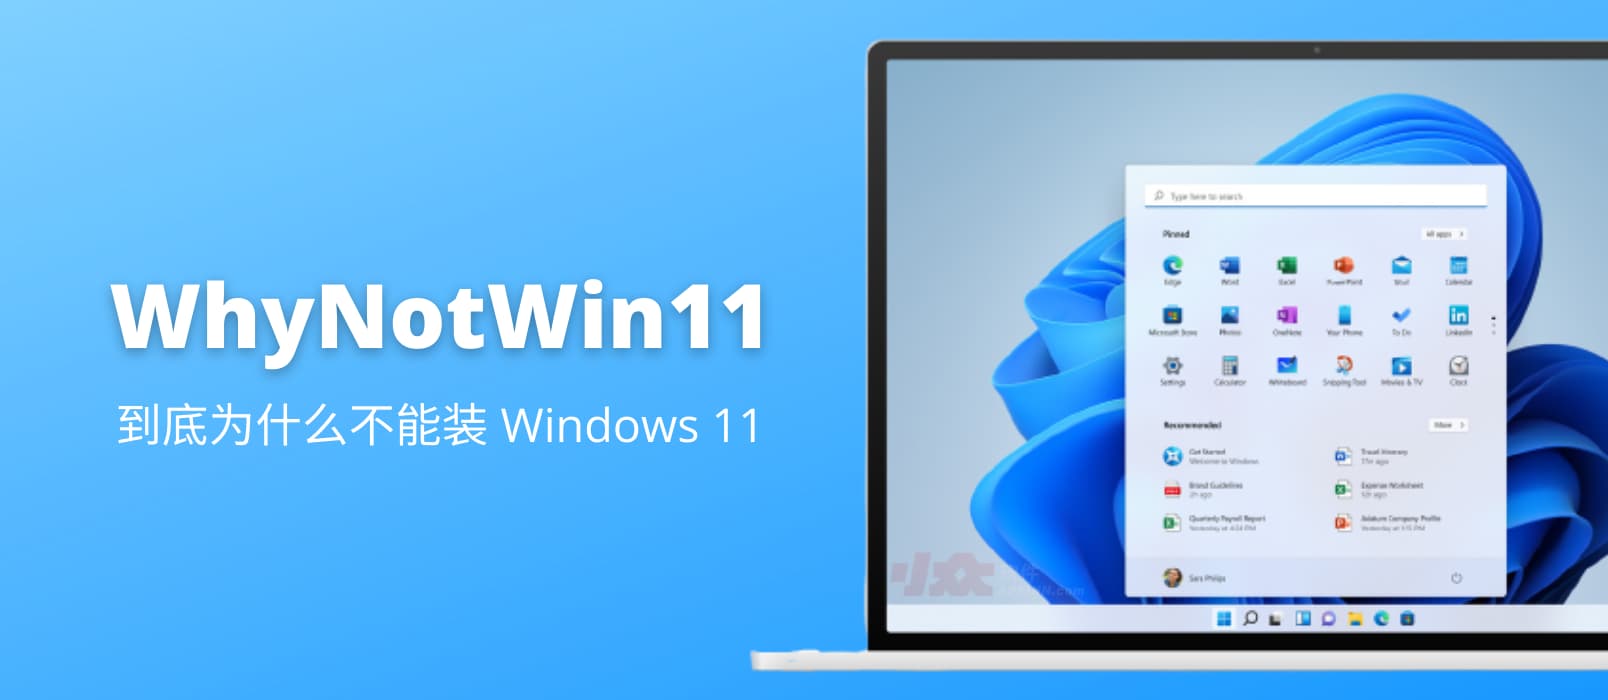 WhyNotWin11 - 到底为什么不能安装 Windows 11？第三方检测工具告诉你还缺什么